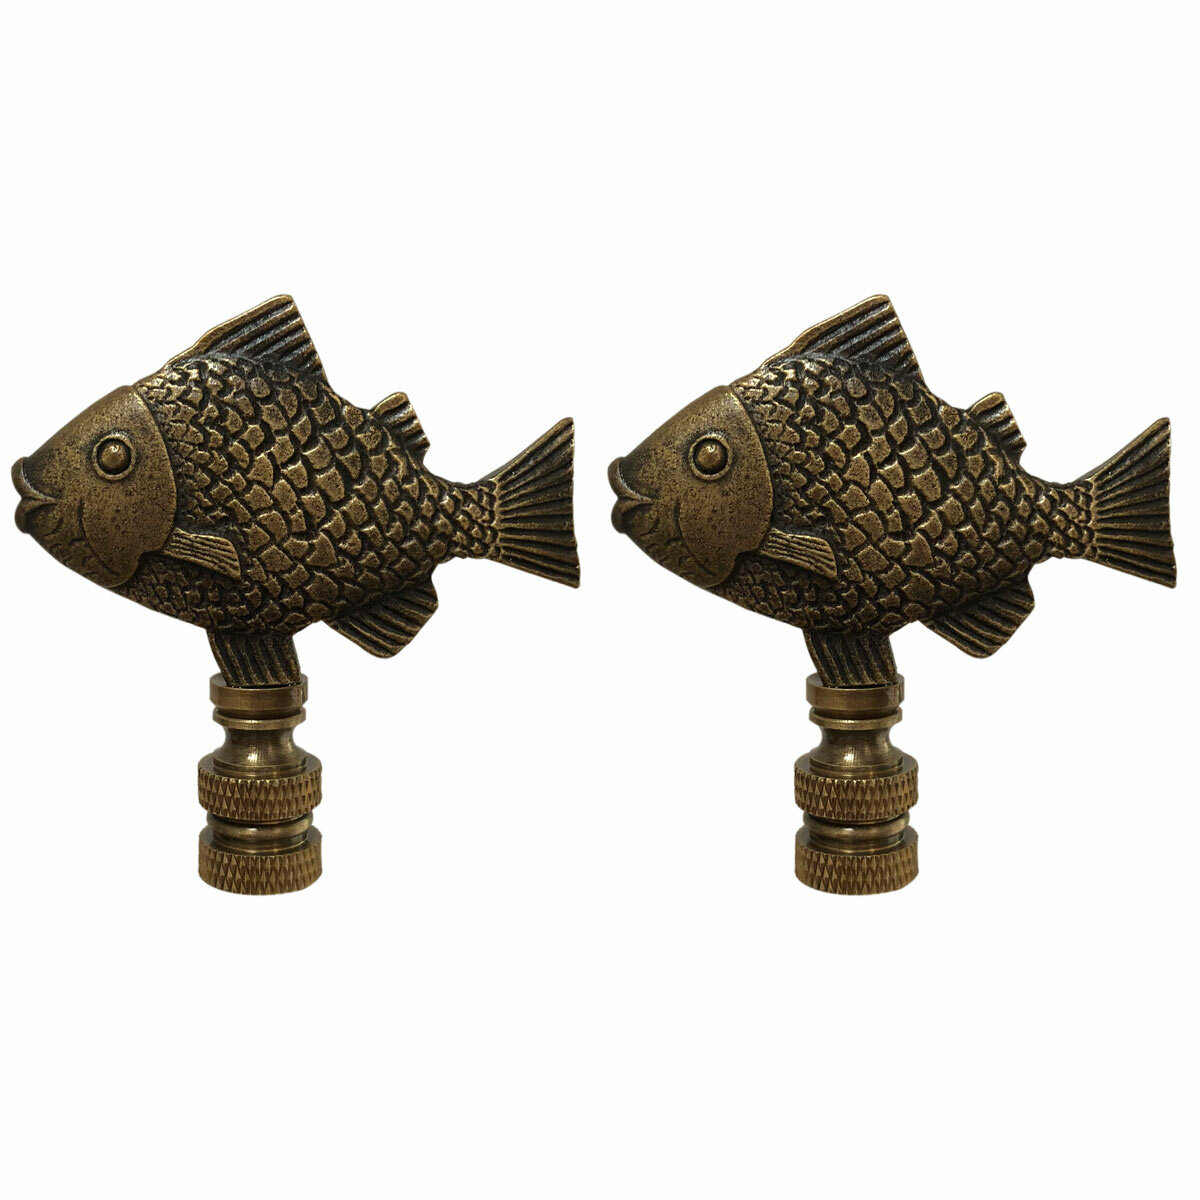 RoyalDesigns Fish Lamp Finial - Wayfair Canada